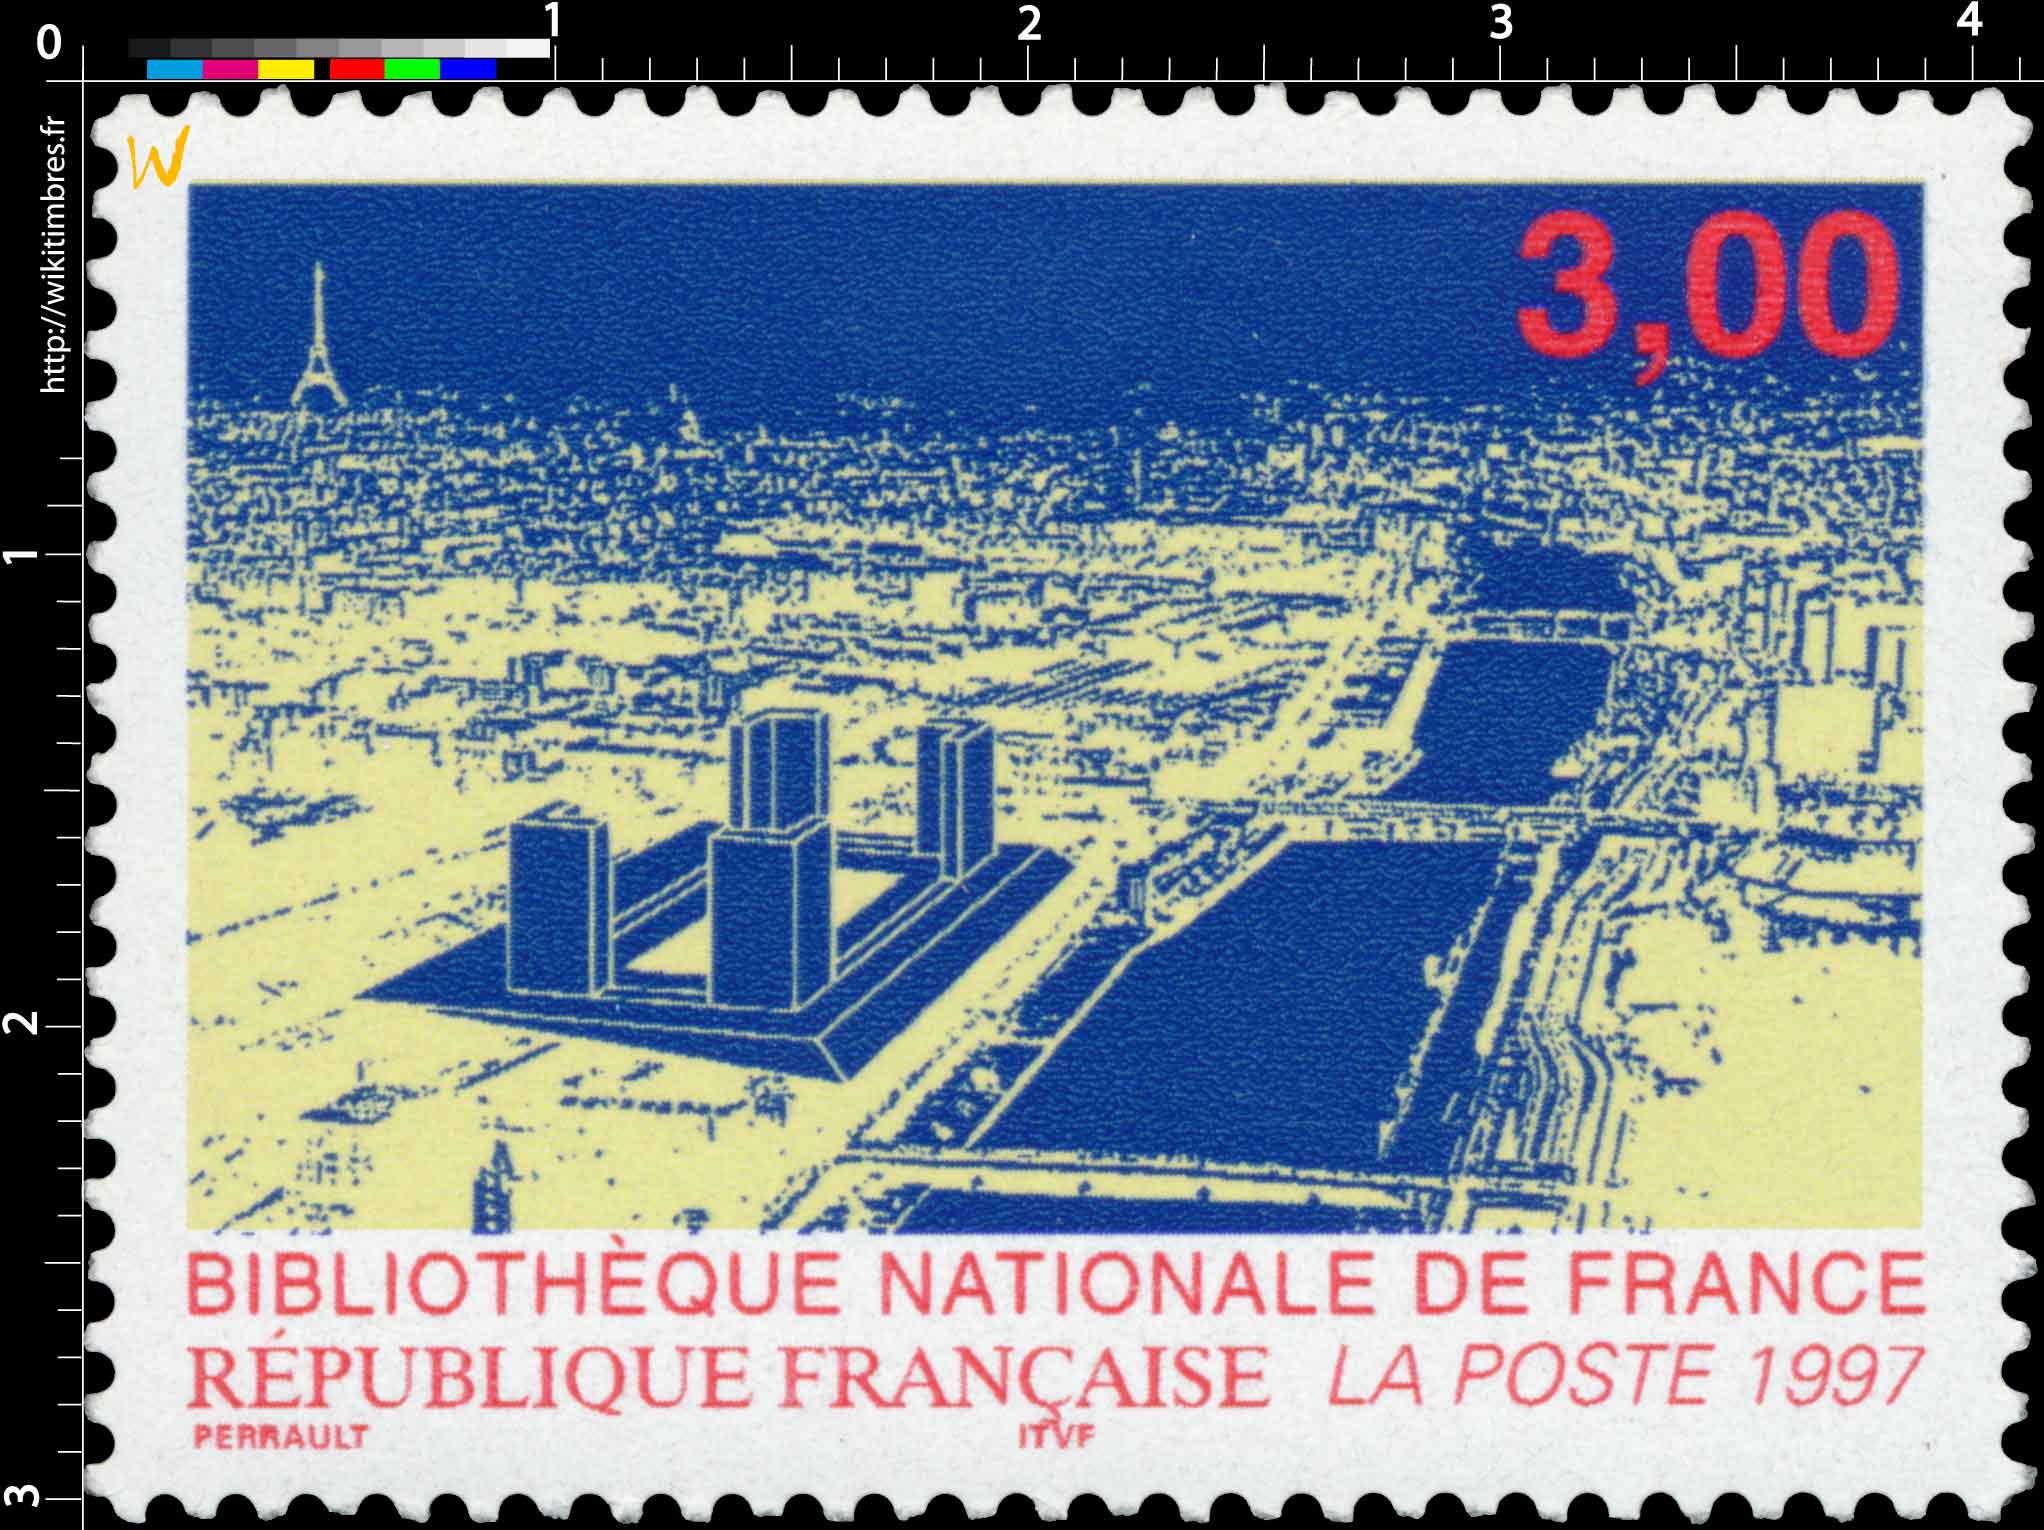 1997 BIBLIOTHÈQUE NATIONALE DE FRANCE